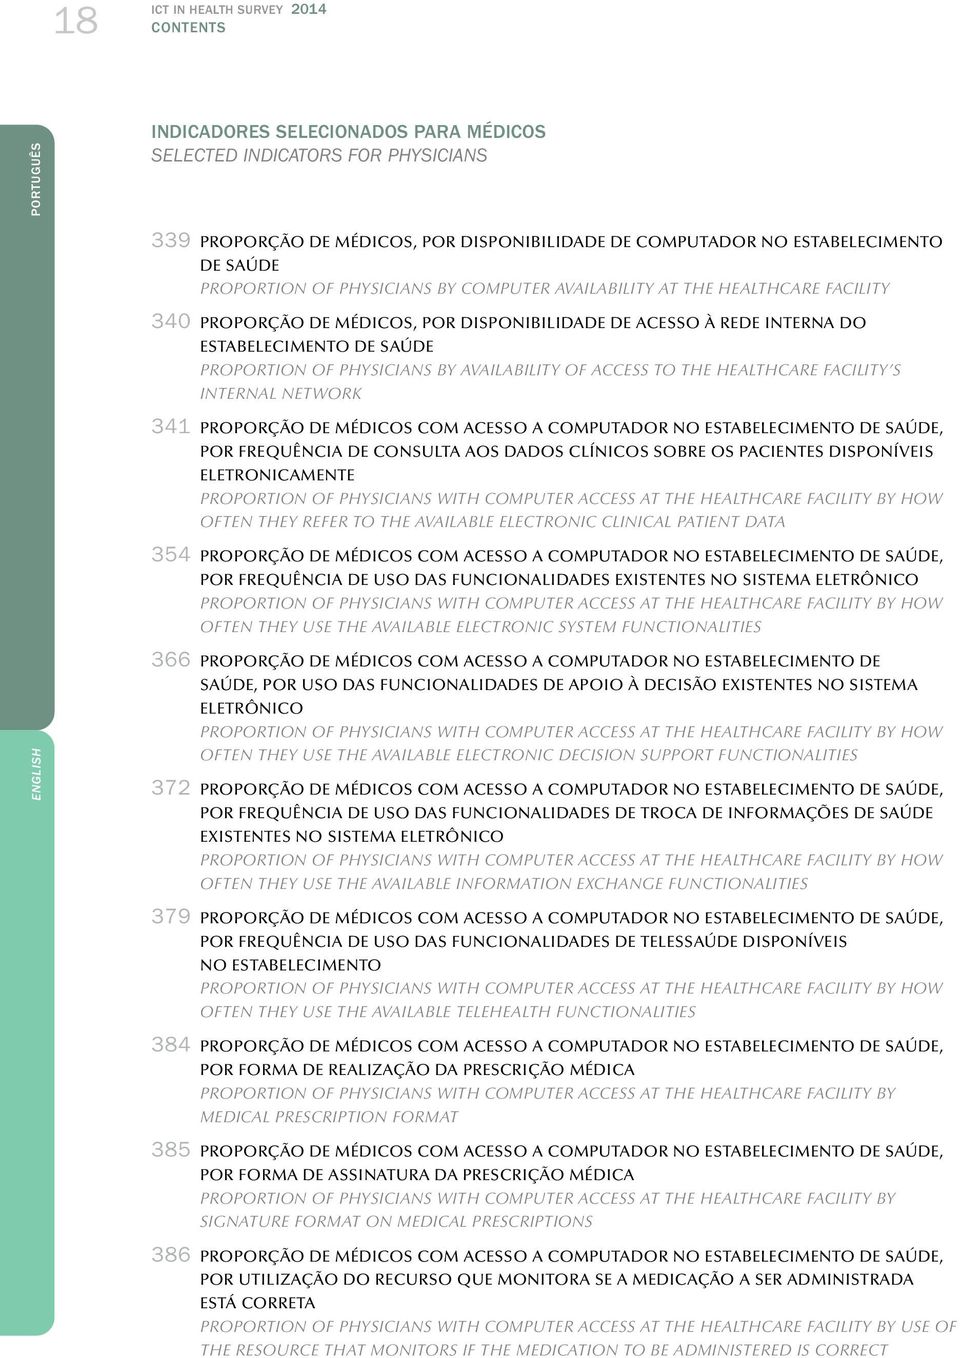 PHYSICIANS BY AVAILABILITY OF ACCESS TO THE HEALTHCARE FACILITY S INTERNAL NETWORK 34 PROPORÇÃO DE MÉDICOS COM ACESSO A COMPUTADOR NO ESTABELECIMENTO DE SAÚDE, POR FREQUÊNCIA DE CONSULTA AOS DADOS